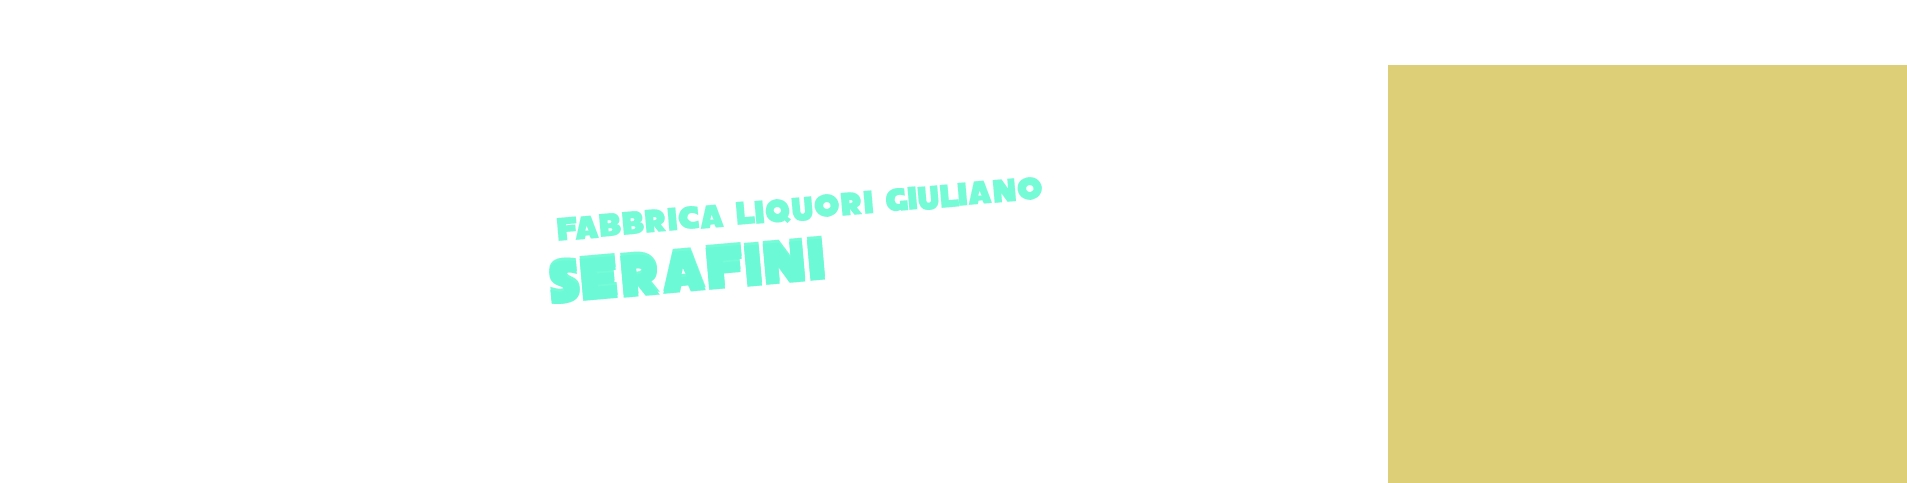 logo Fabbrica Liquori Giuliano Serafini